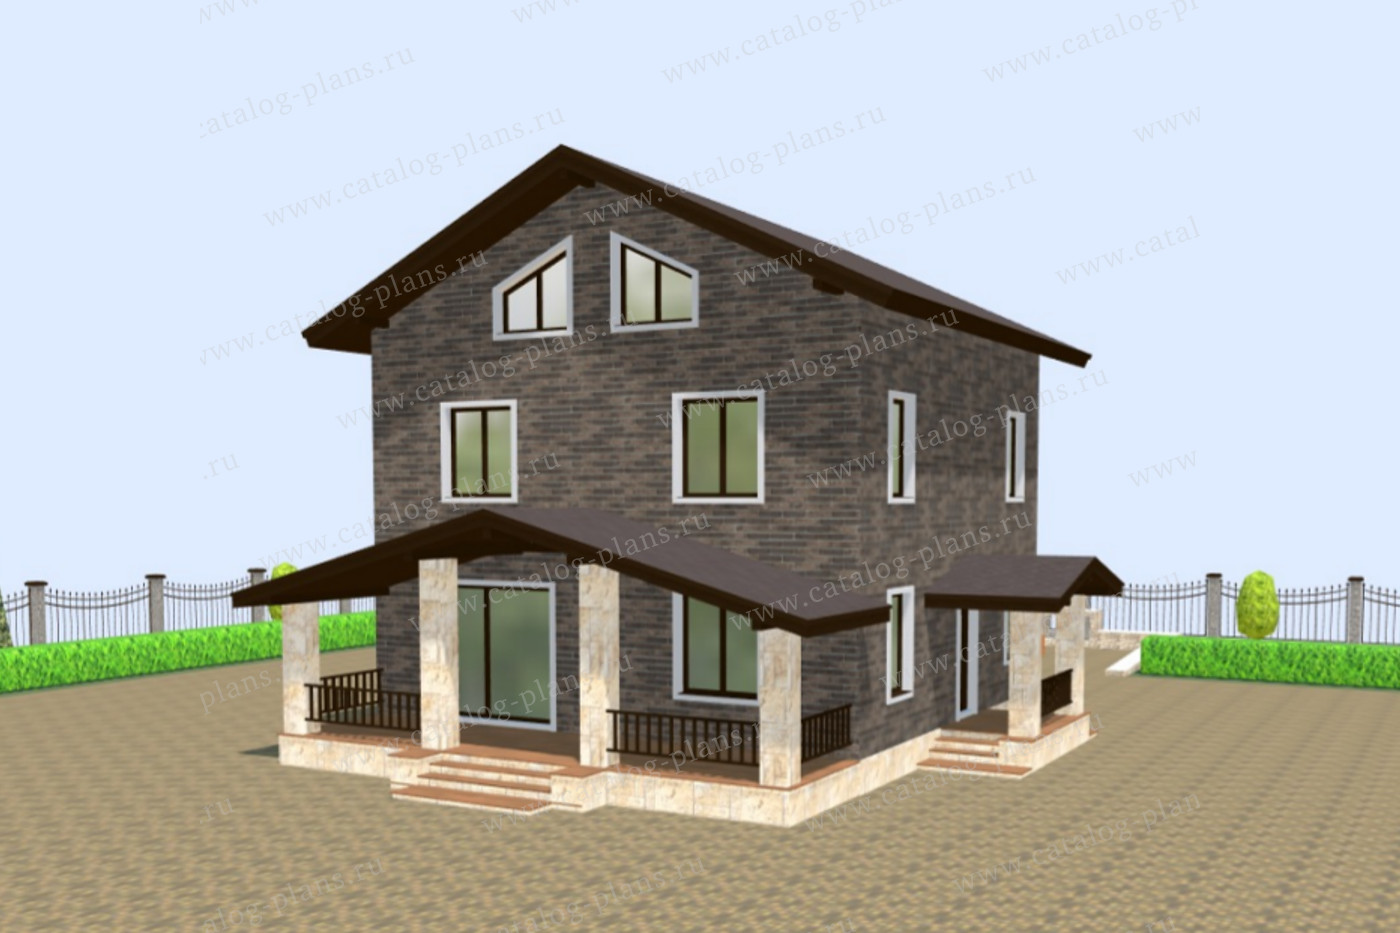 Проект 40-04BDK1, жилой дом, материал - поризованный керамический блок 380, количество этажей - 3, архитектурный стиль - европейский, фундамент - монолитный ленточный ж/б